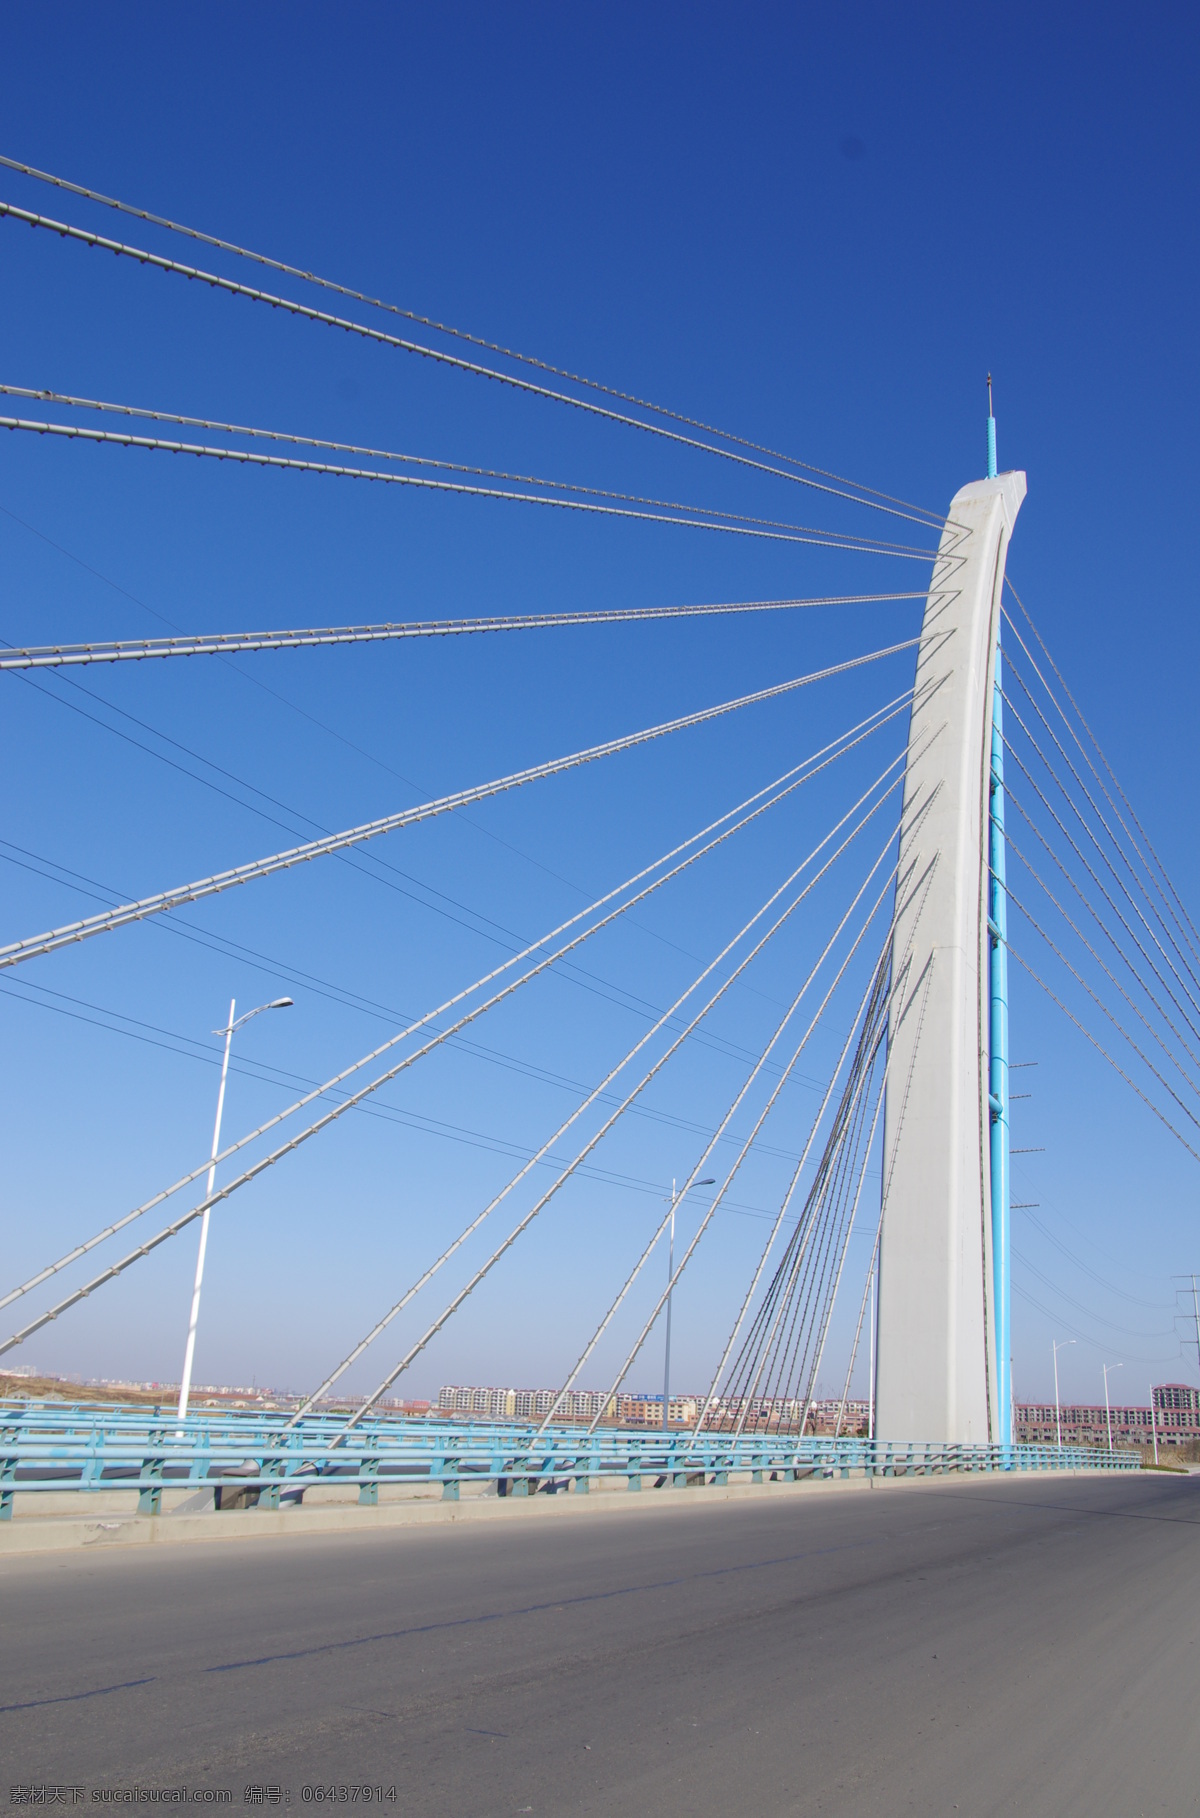 背景图 电缆 钢筋 工业 建筑 建筑摄影 建筑园林 科技 现代 桥梁 现代桥梁 桥 线条 三里河 大桥 矢量图 现代科技